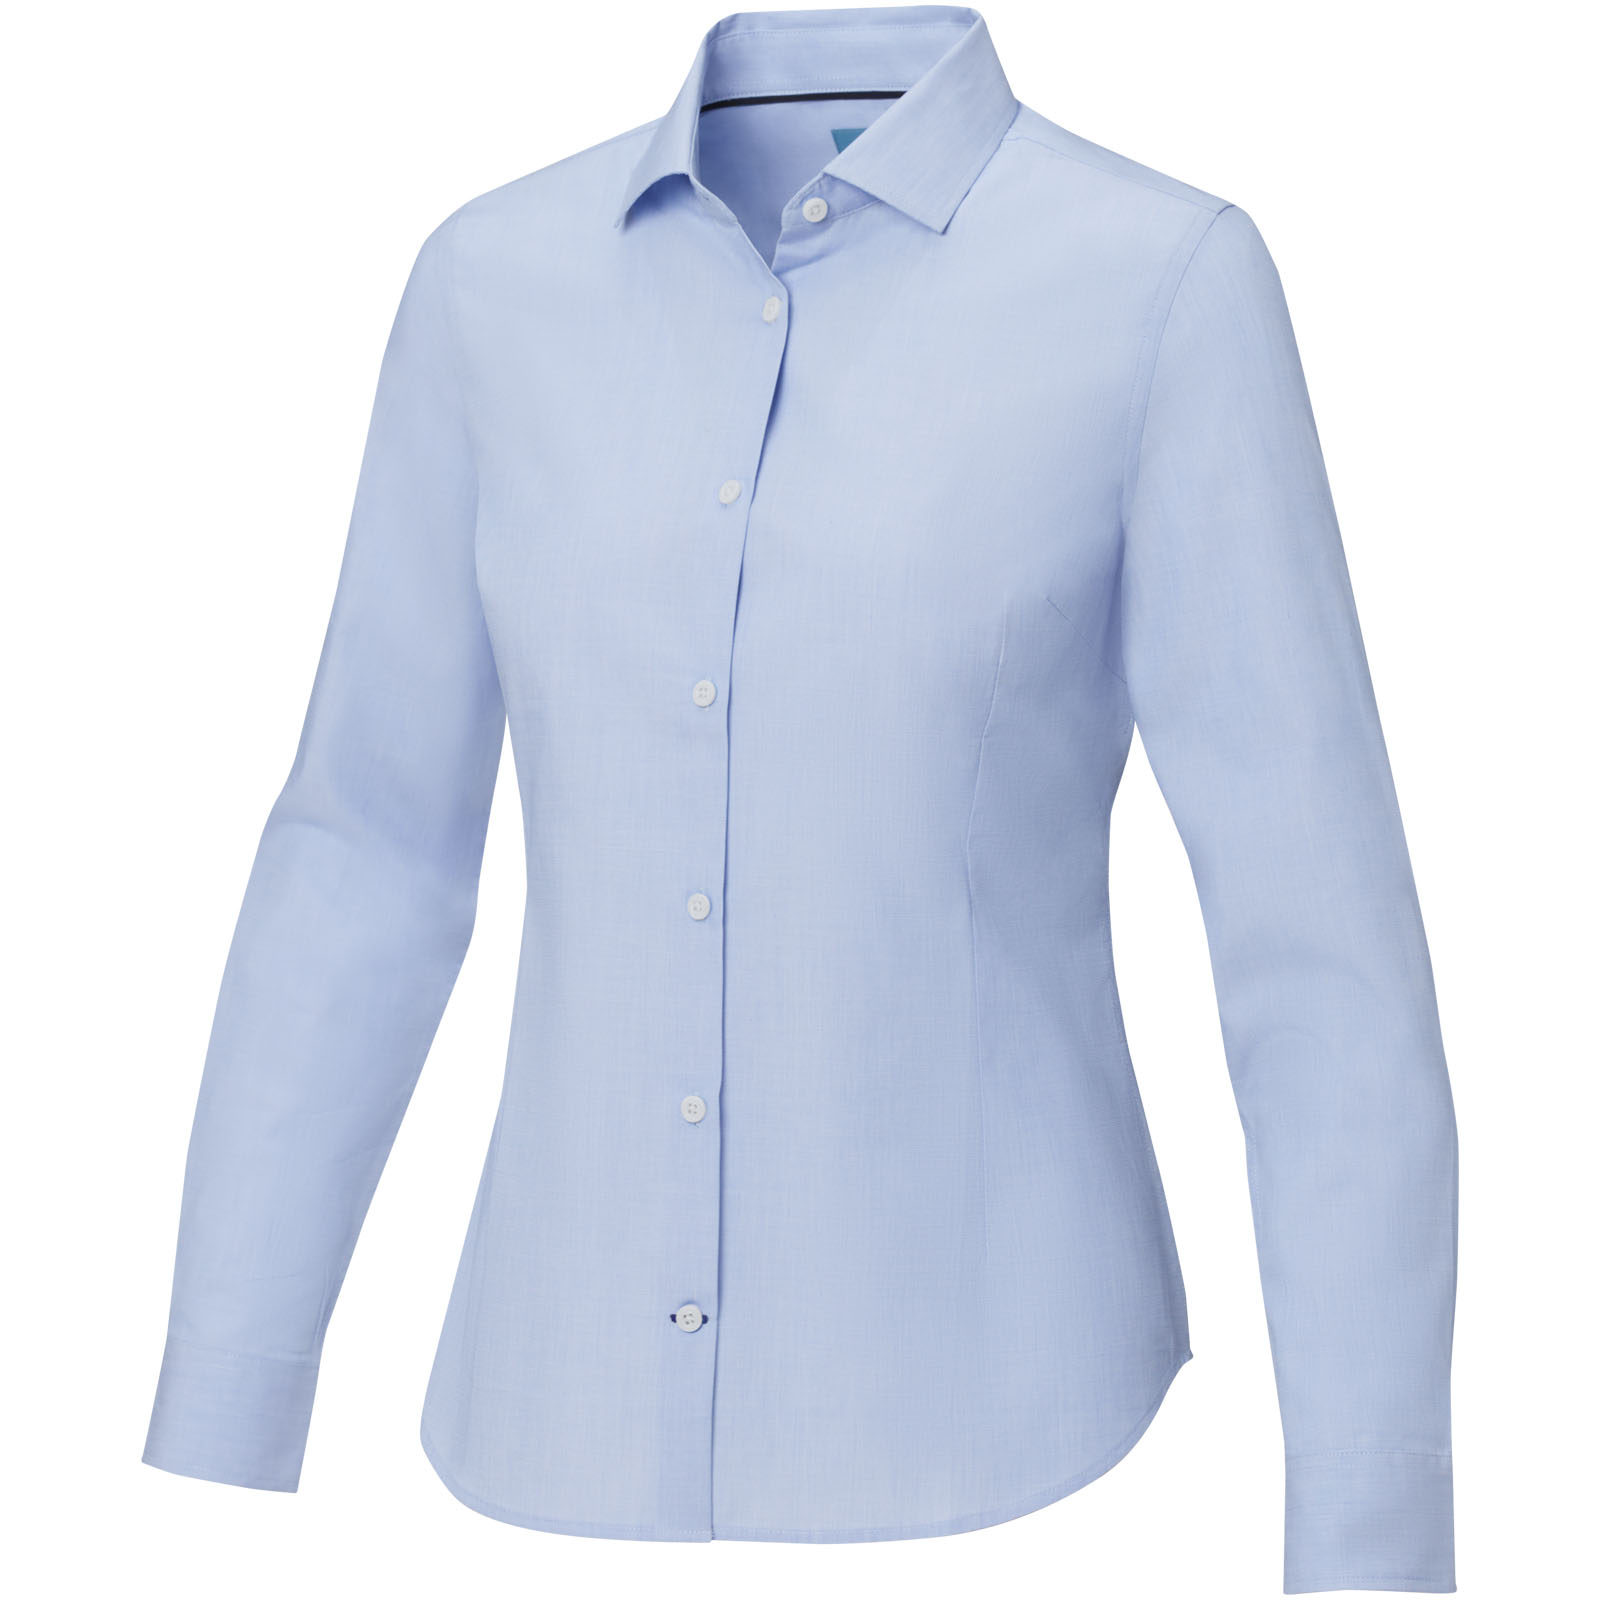 Camicia da donna a maniche lunghe Cuprite in cotone organico certificato GOTS - Mediglia